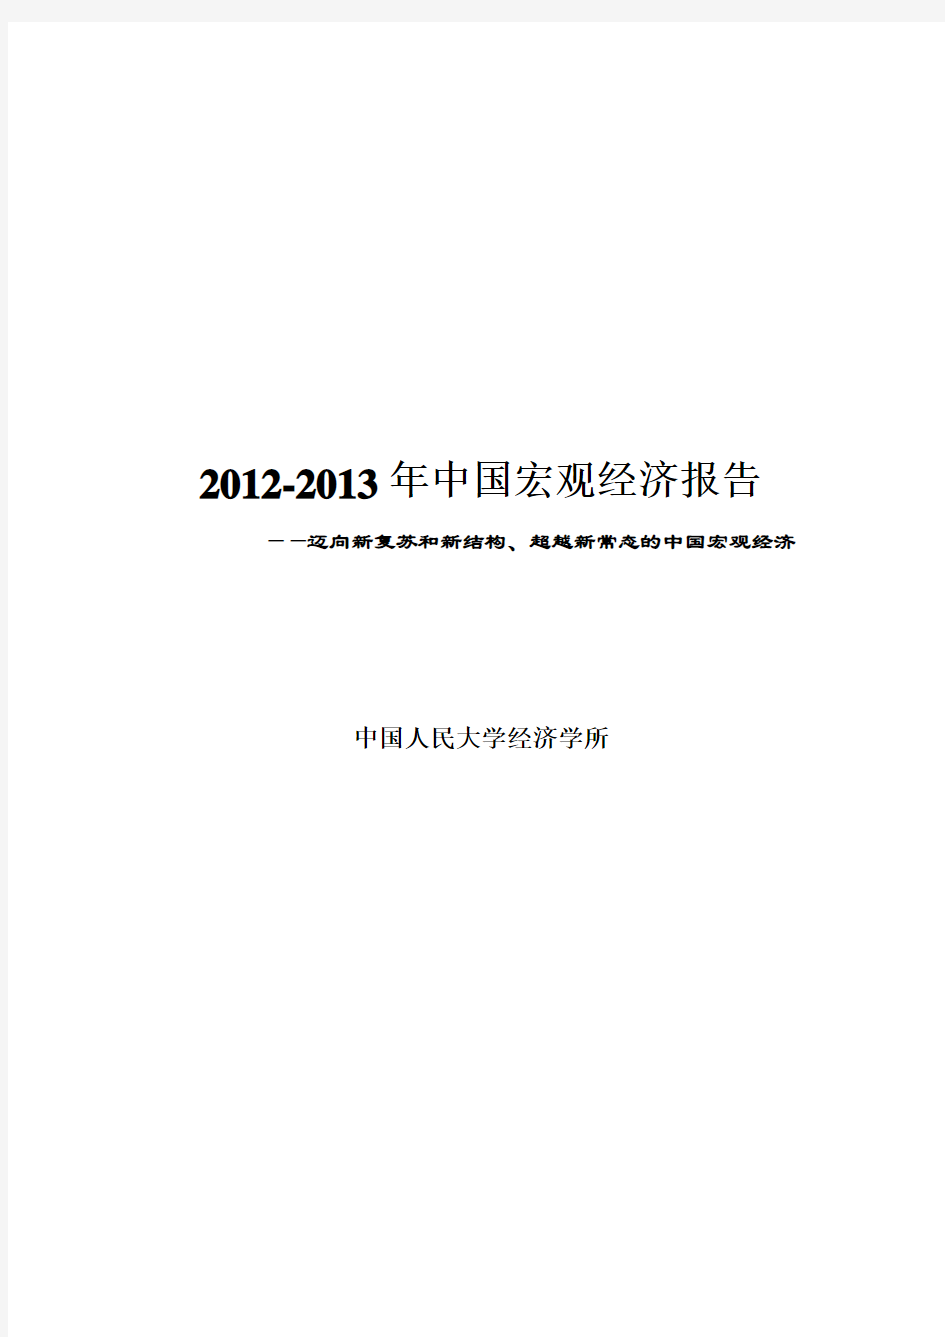 2012-2013年中国宏观经济报告